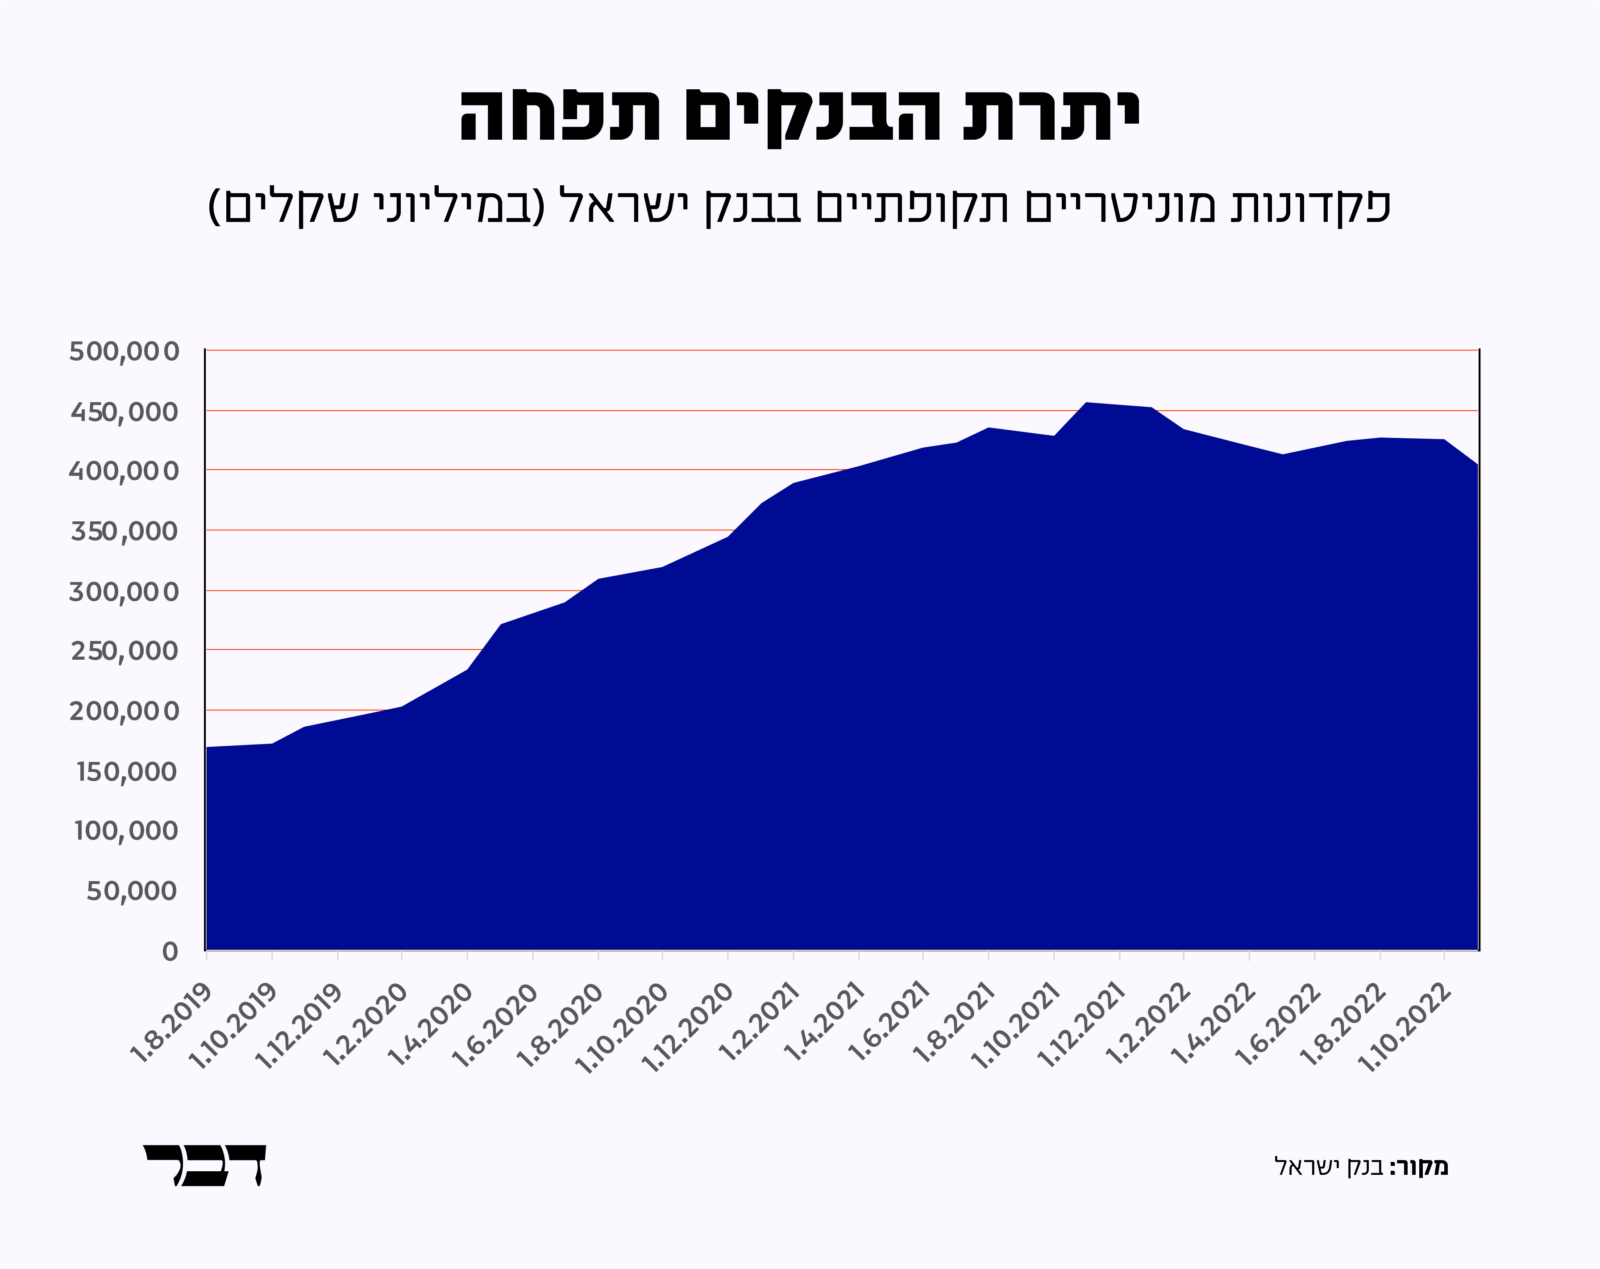 יתרת הפיקדונות של הבנקים הגדולים בבנק ישראל (גרפיקה: דבר)